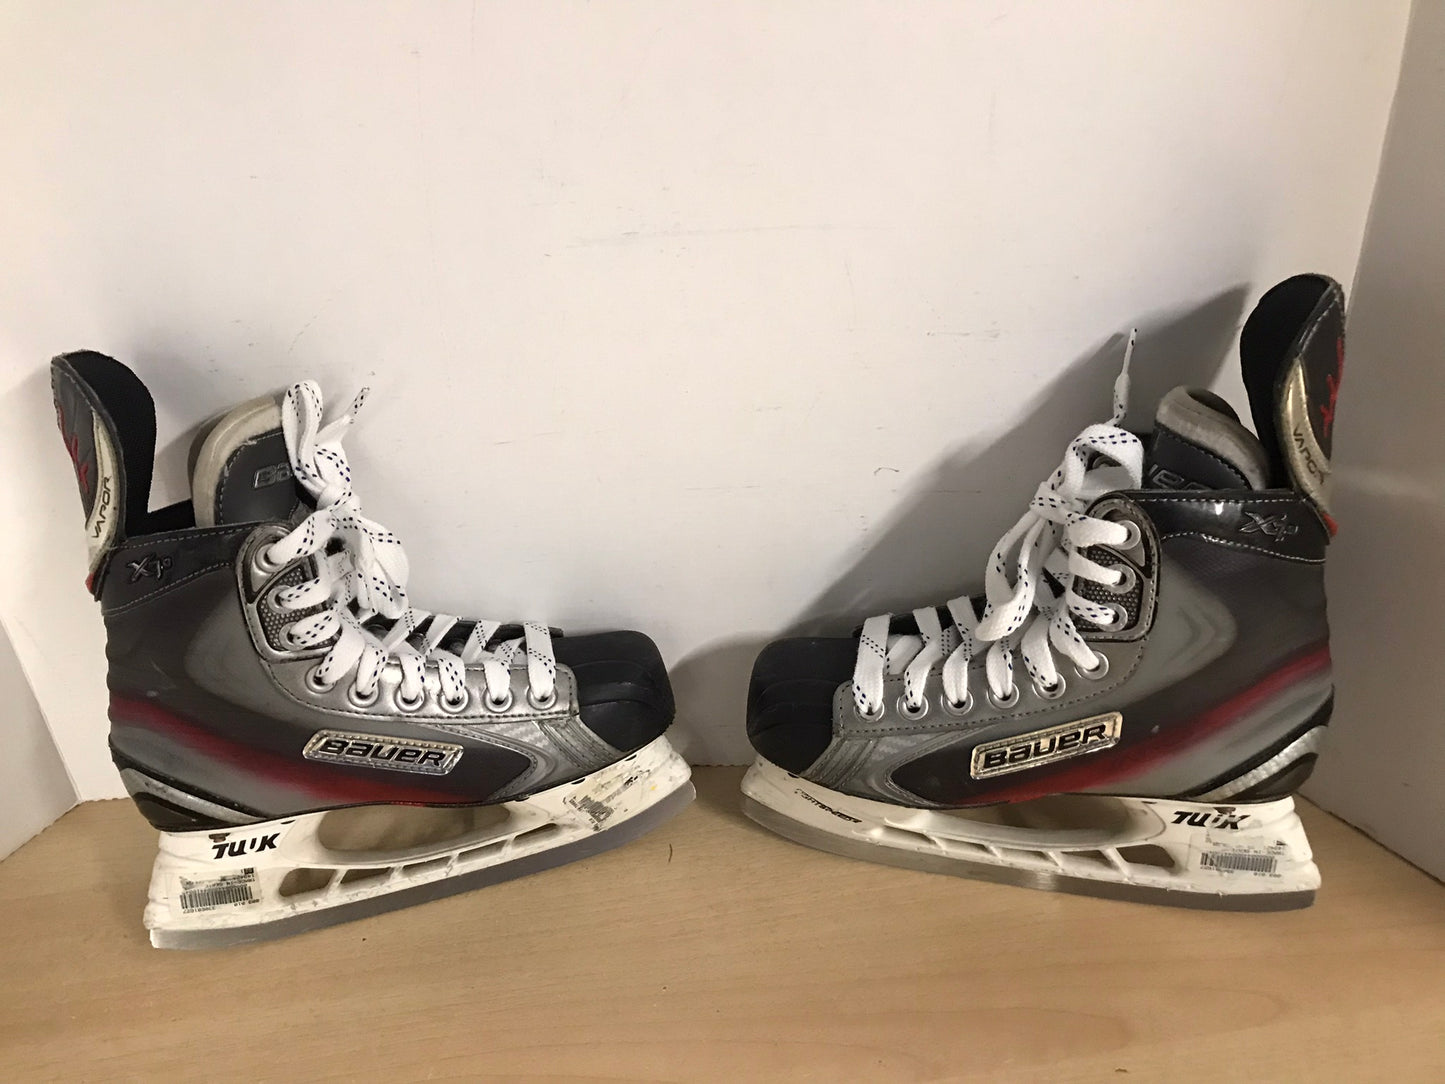 Hockey Skates Child Size 4 Shoe Size Bauer Vapor X7.0